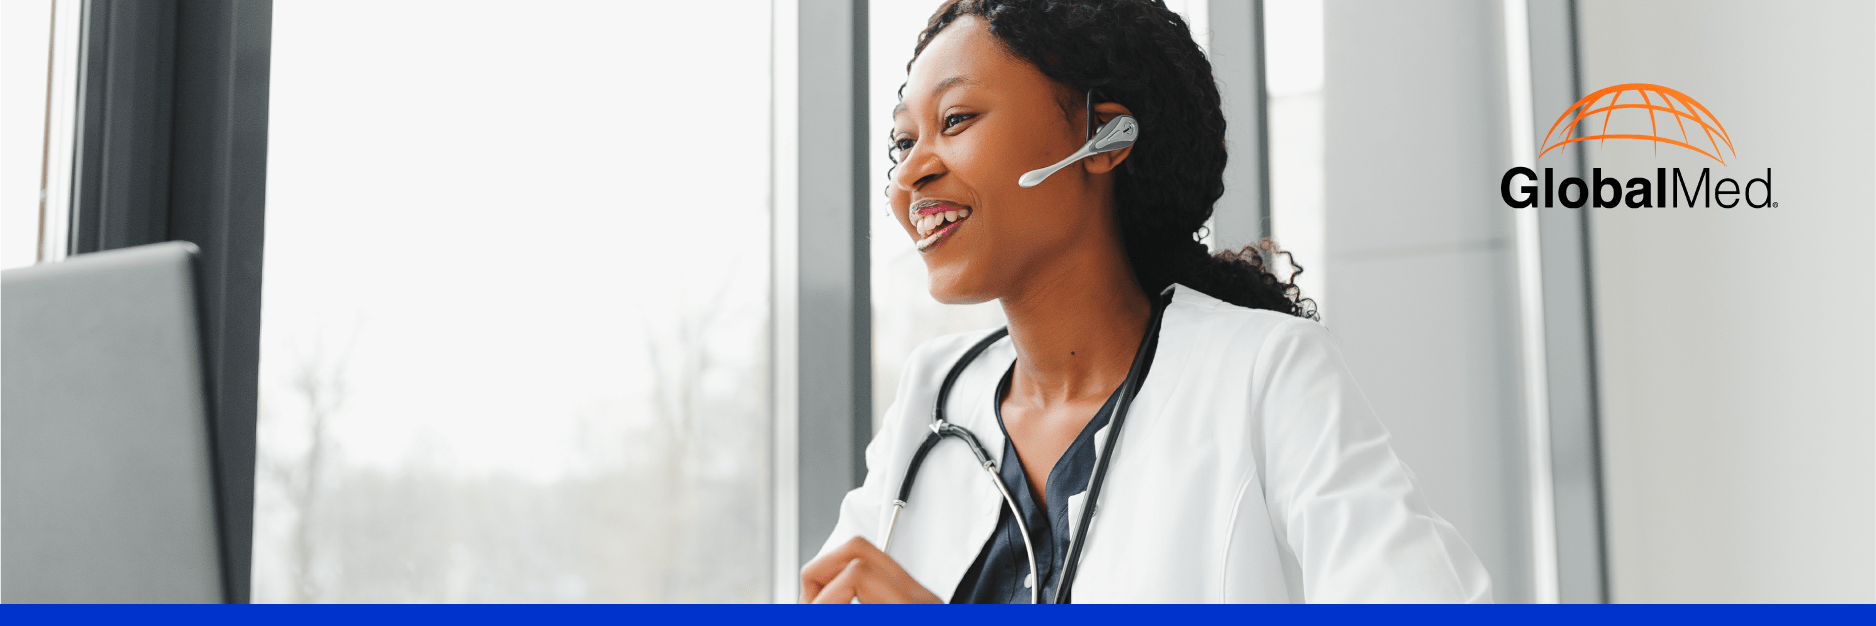 telehealth provider in a healthcare consultation